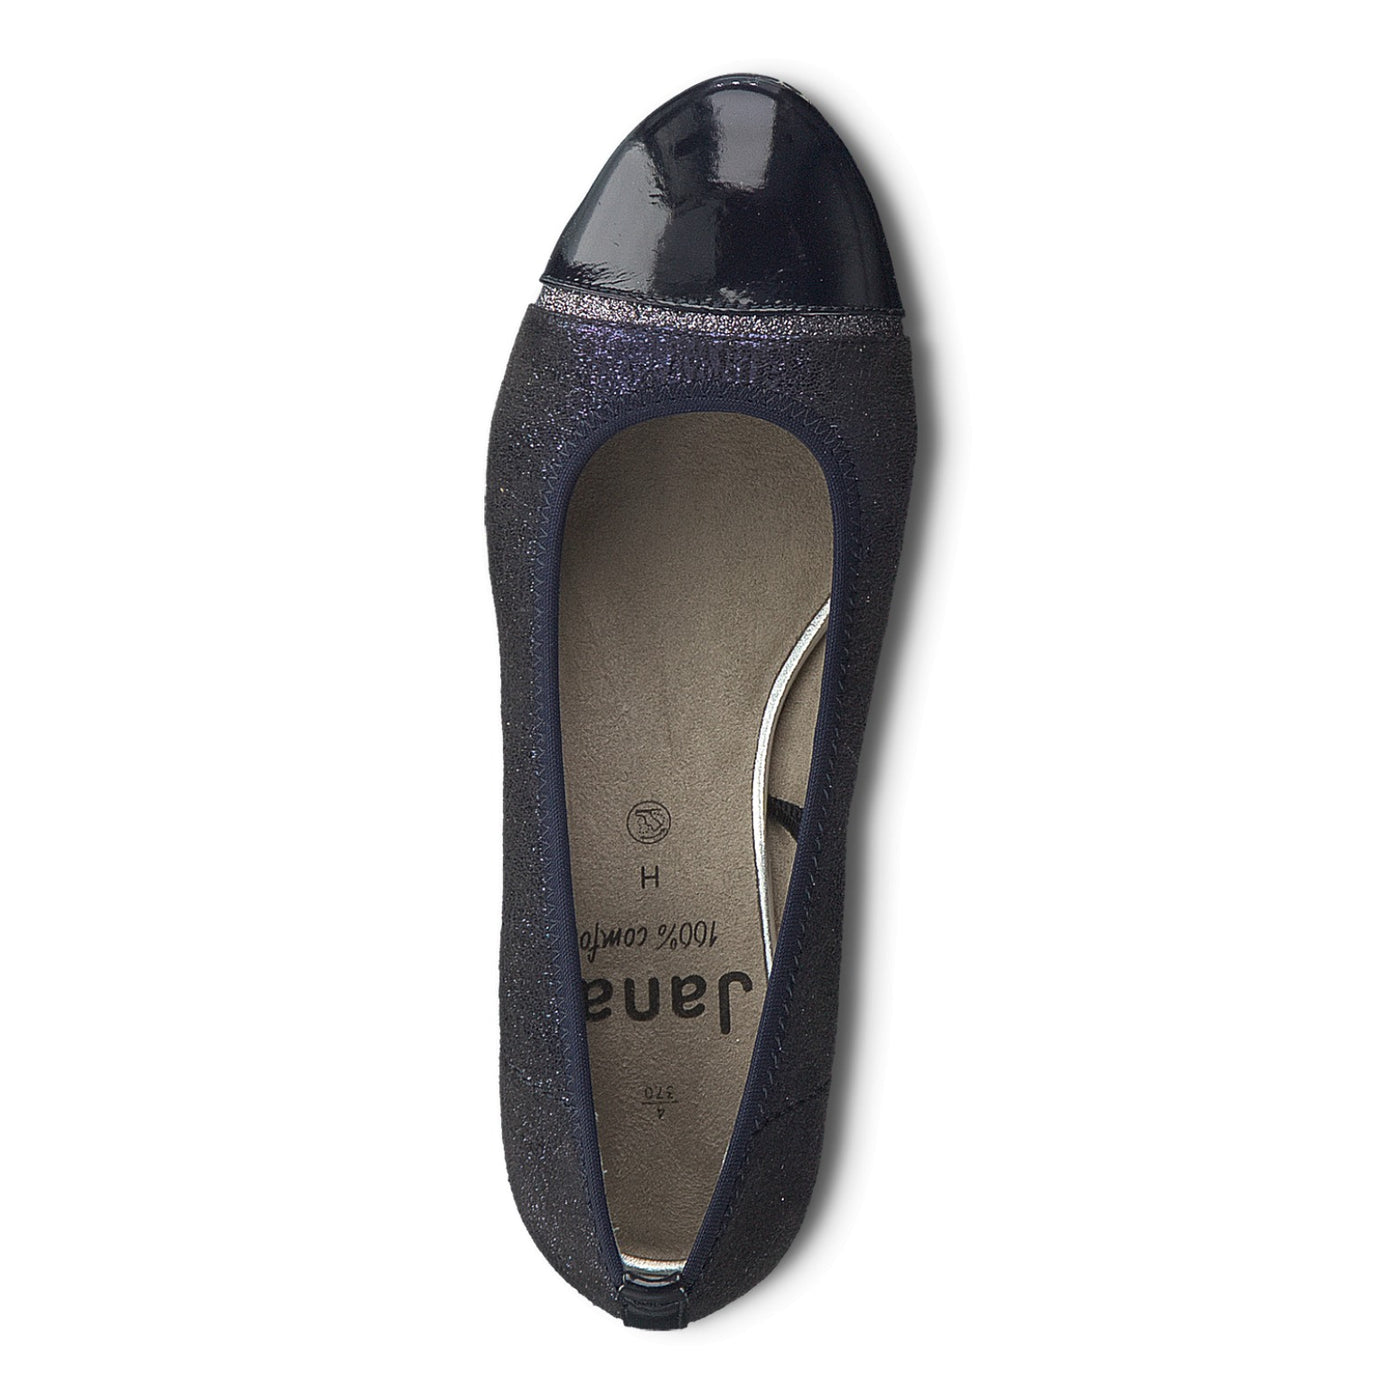 JANA - Navy Glitter Low Heel Court Shoe